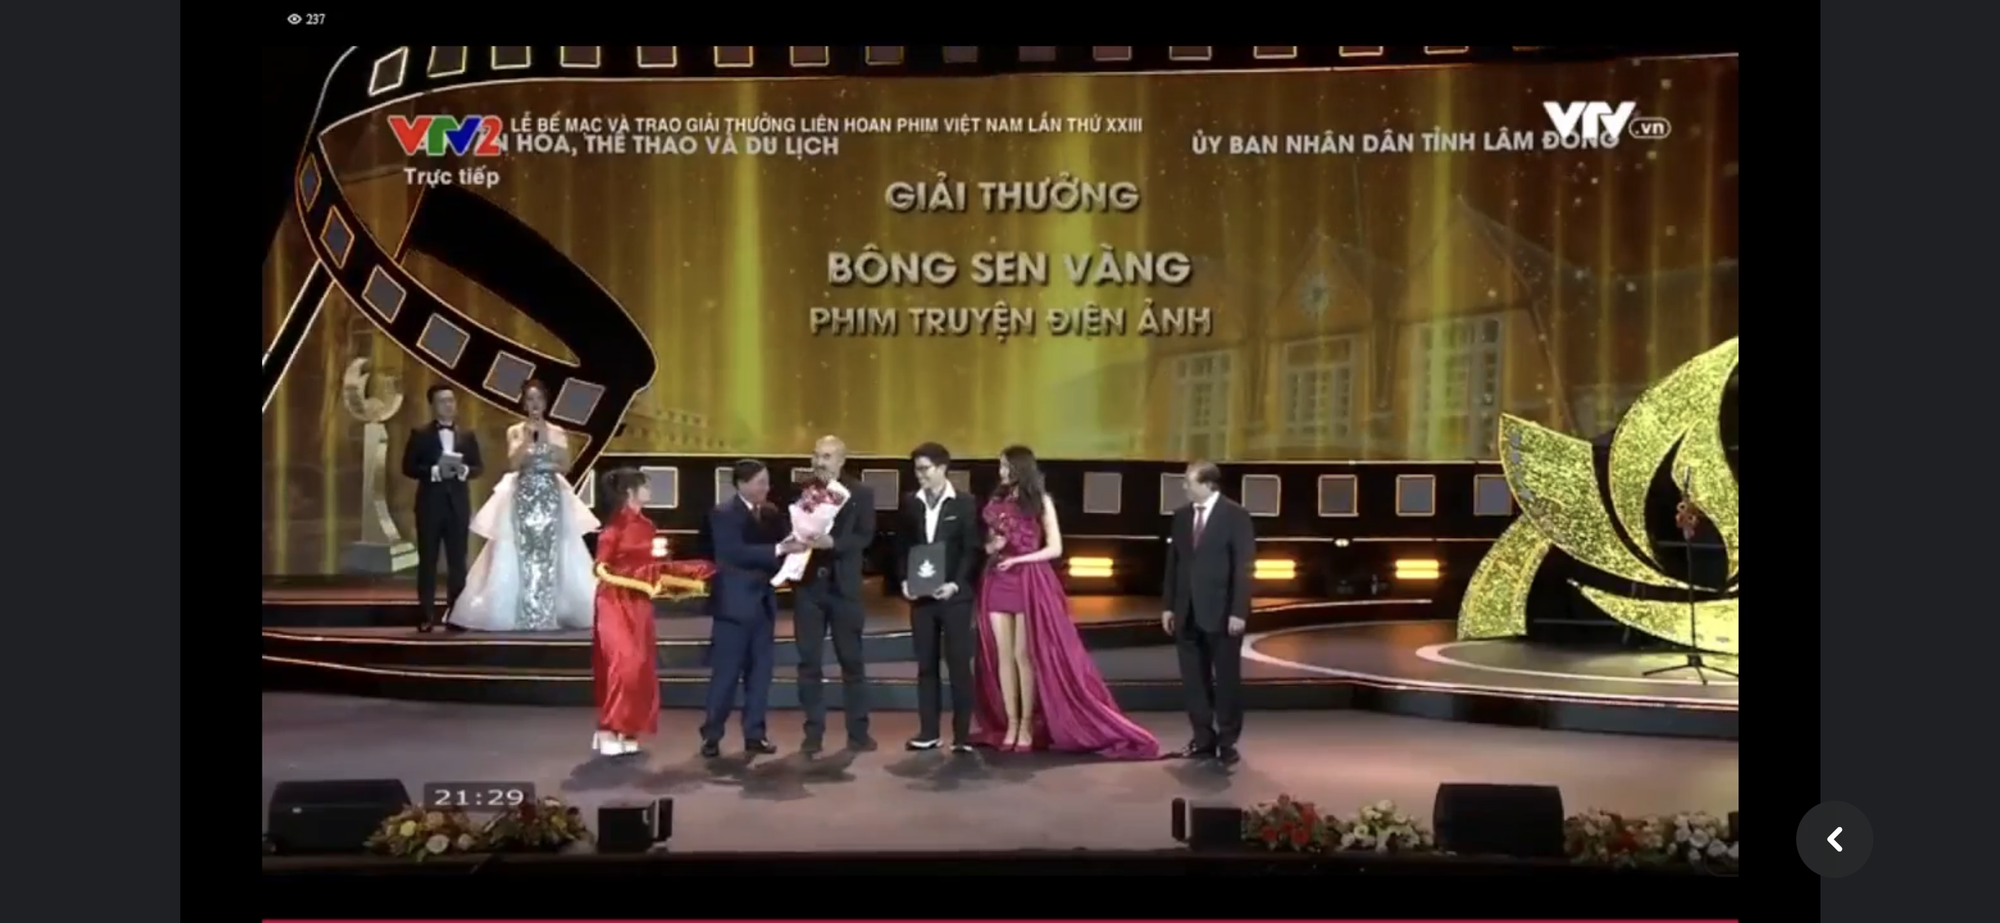 Tro Tàn Rực Rỡ đại thắng Bông Sen Vàng, Thái Hòa tiếp tục nhận thêm giải diễn xuất - Ảnh 1.